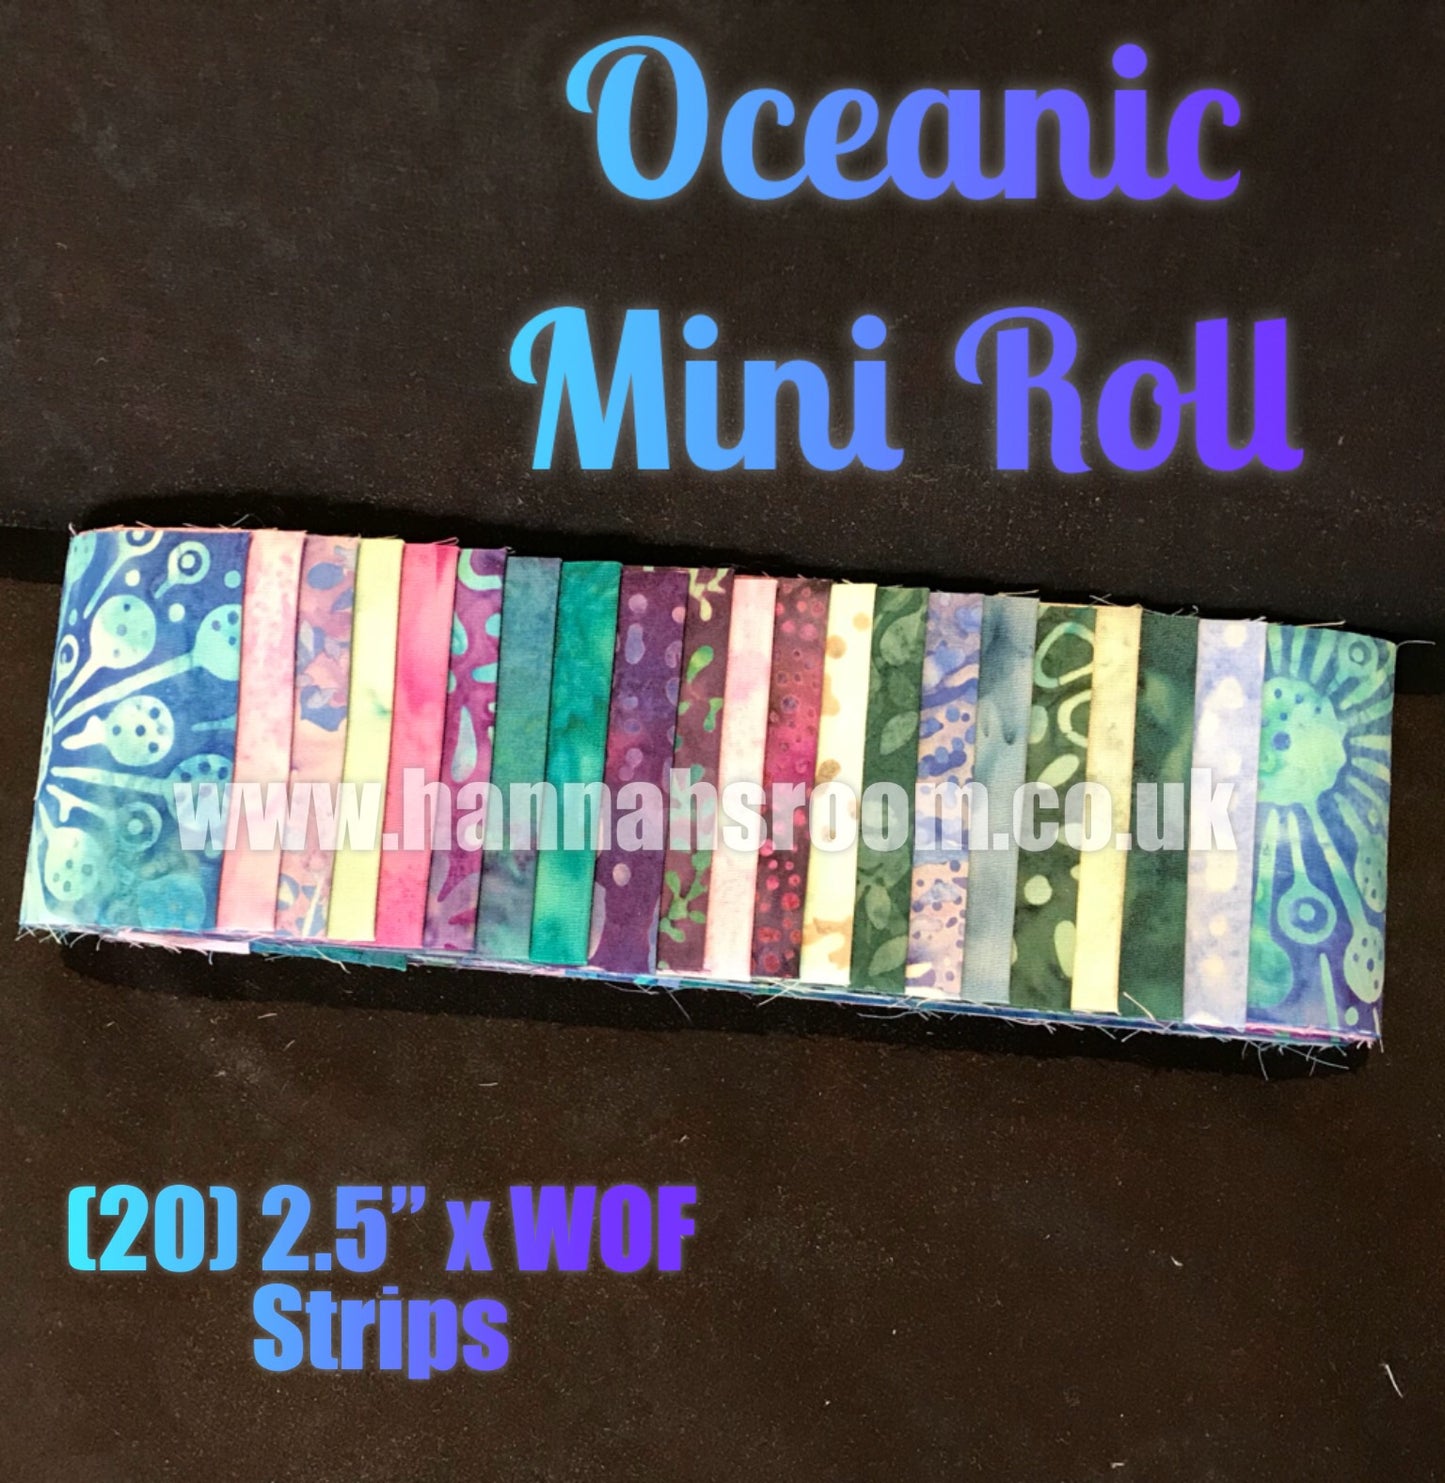 Oceanic Mini Roll (20) 2.5" x WOF